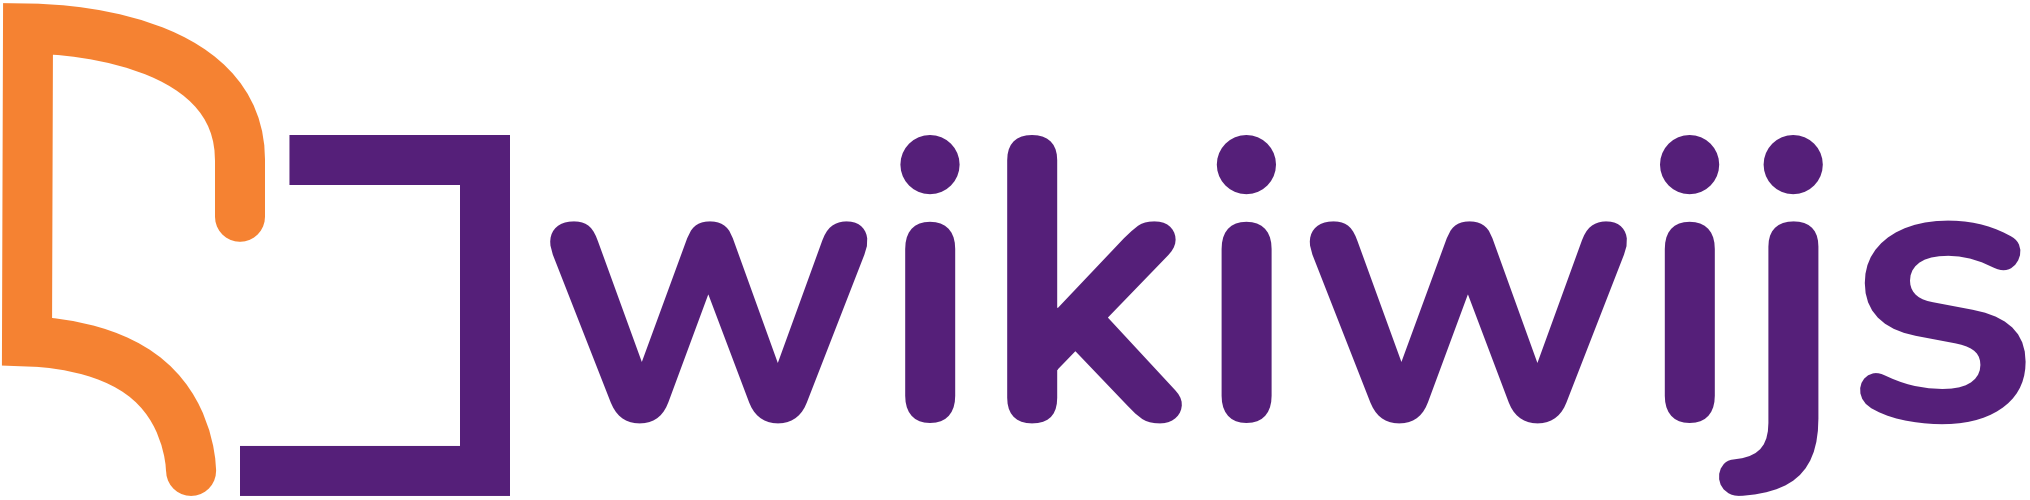 wikiwijs-logo